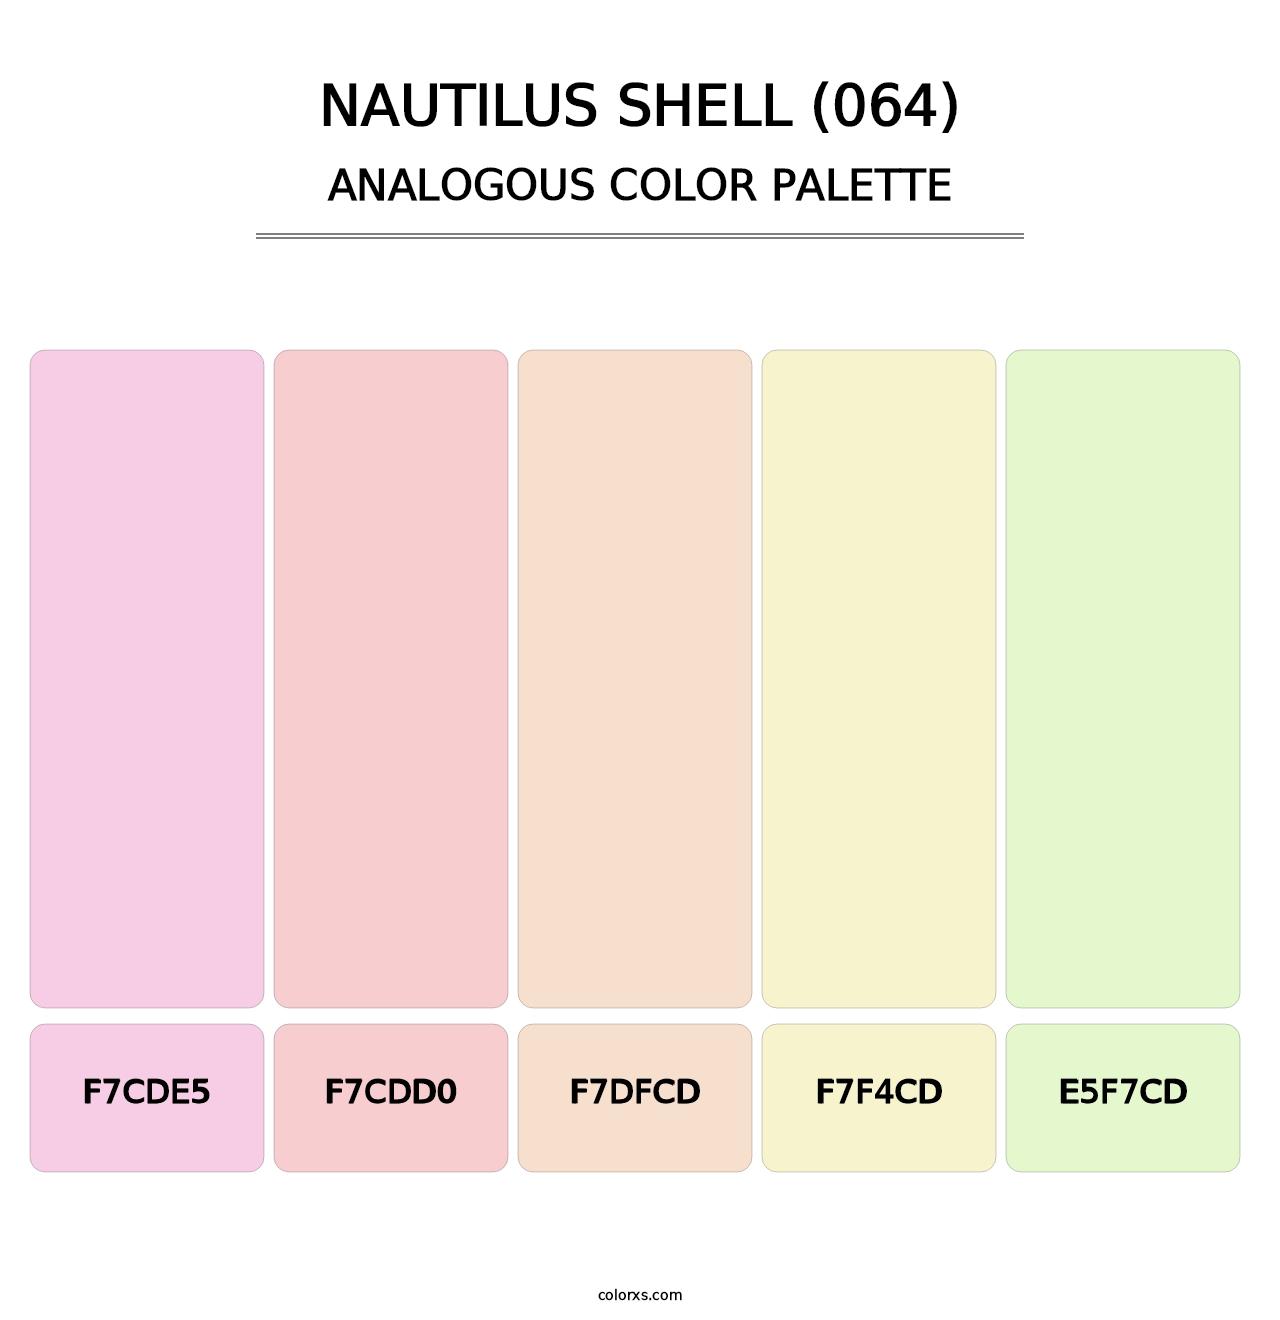 Nautilus Shell (064) - Analogous Color Palette